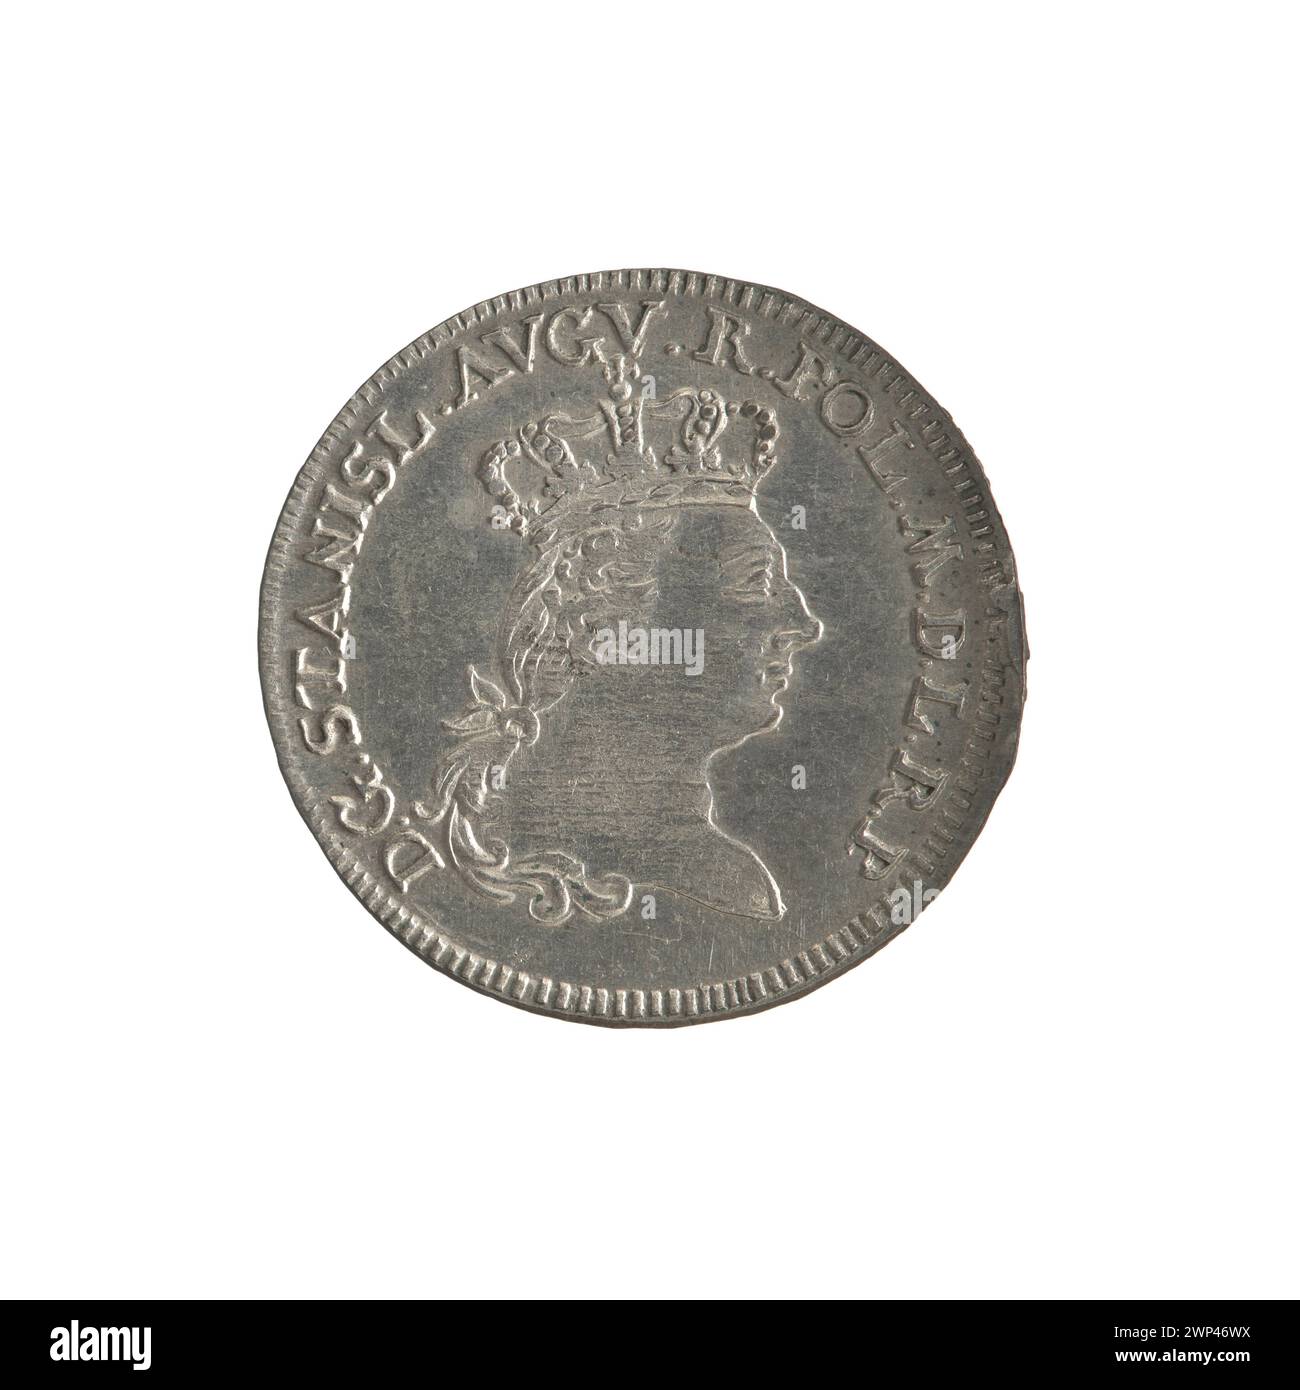 Sixth of the track; Stanis Aw August Poniatowski (Polish King; 1764-1795), Br Ckmann, Szymon (Fl. 1764-1768); 1765 (1771-00-00-1771-00-00); Stock Photo